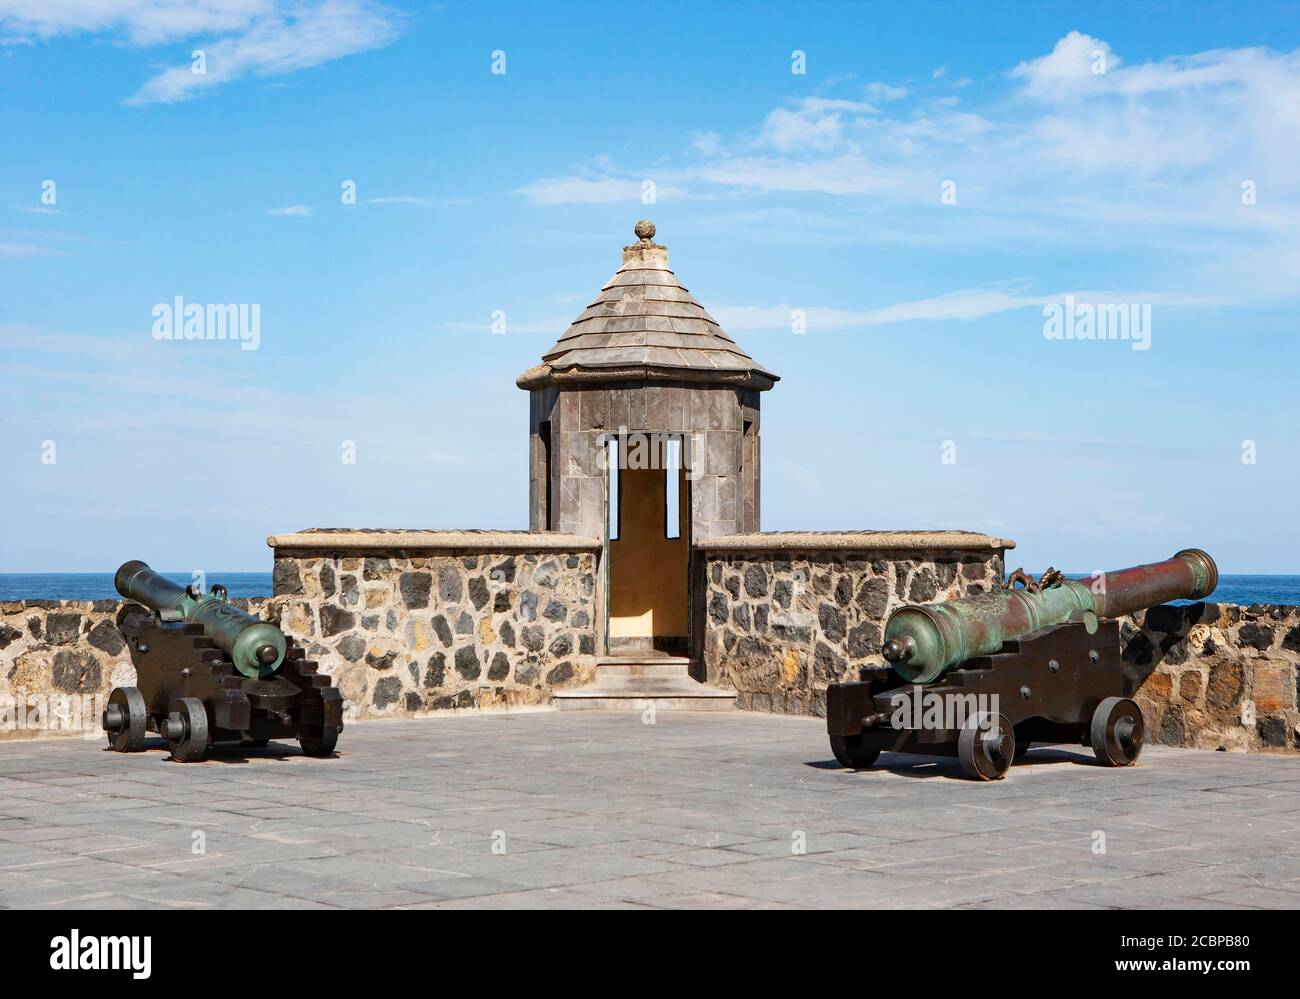 Festung Bateria de Santa Barbara, Puerto de la Cruz, Teneriffa, Kanarische Inseln, Spanien Stockfoto